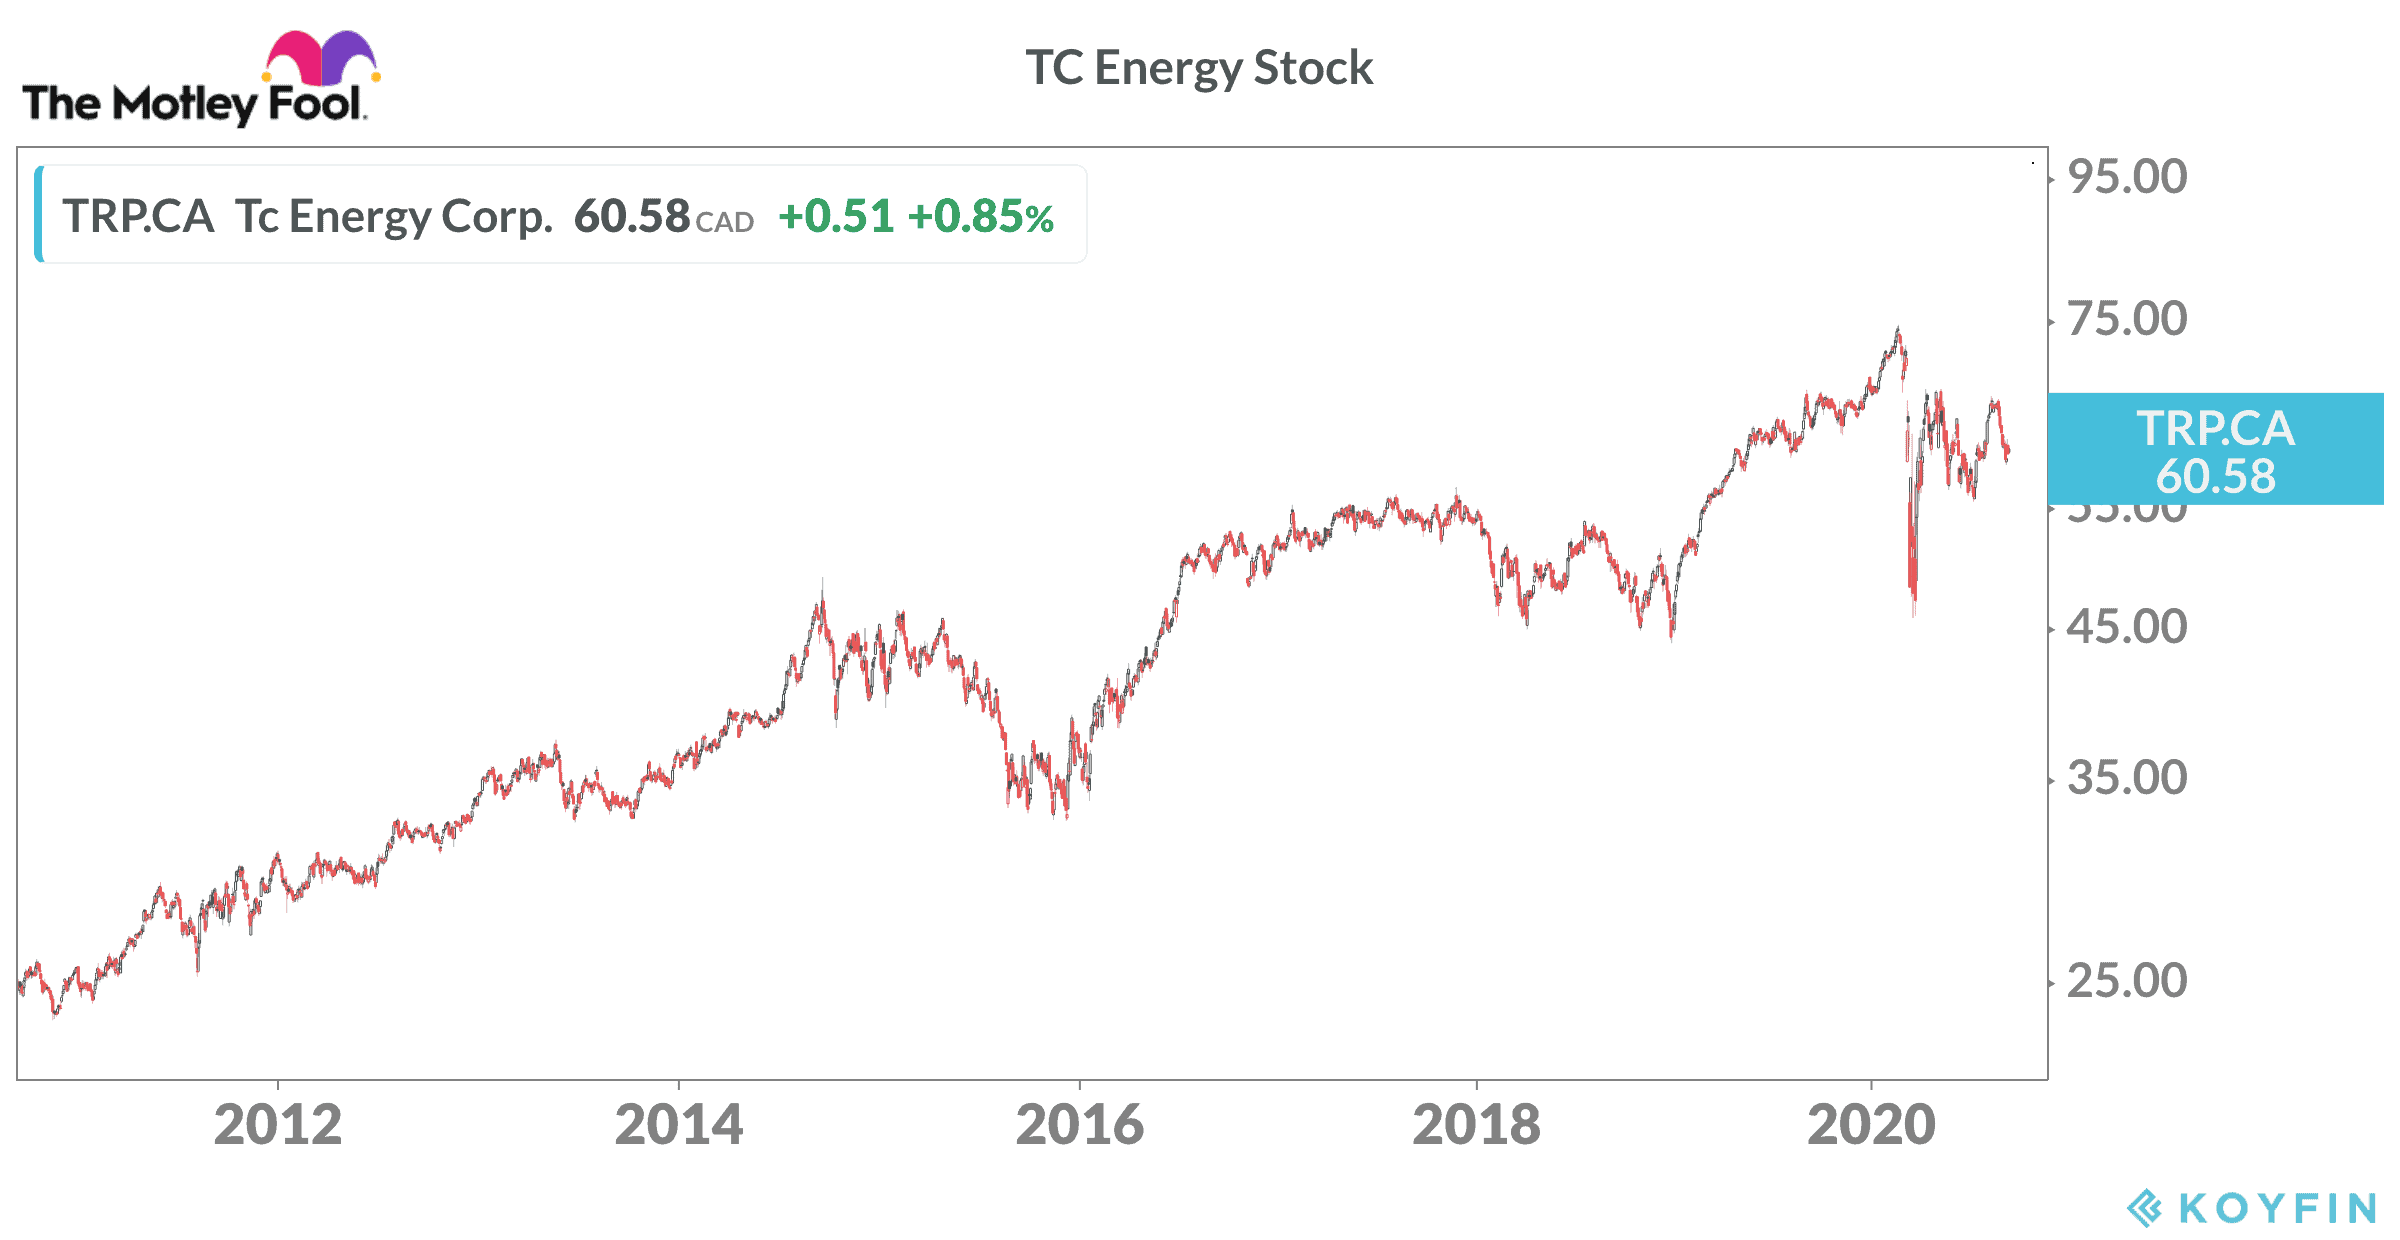 TC Energy Stock Price